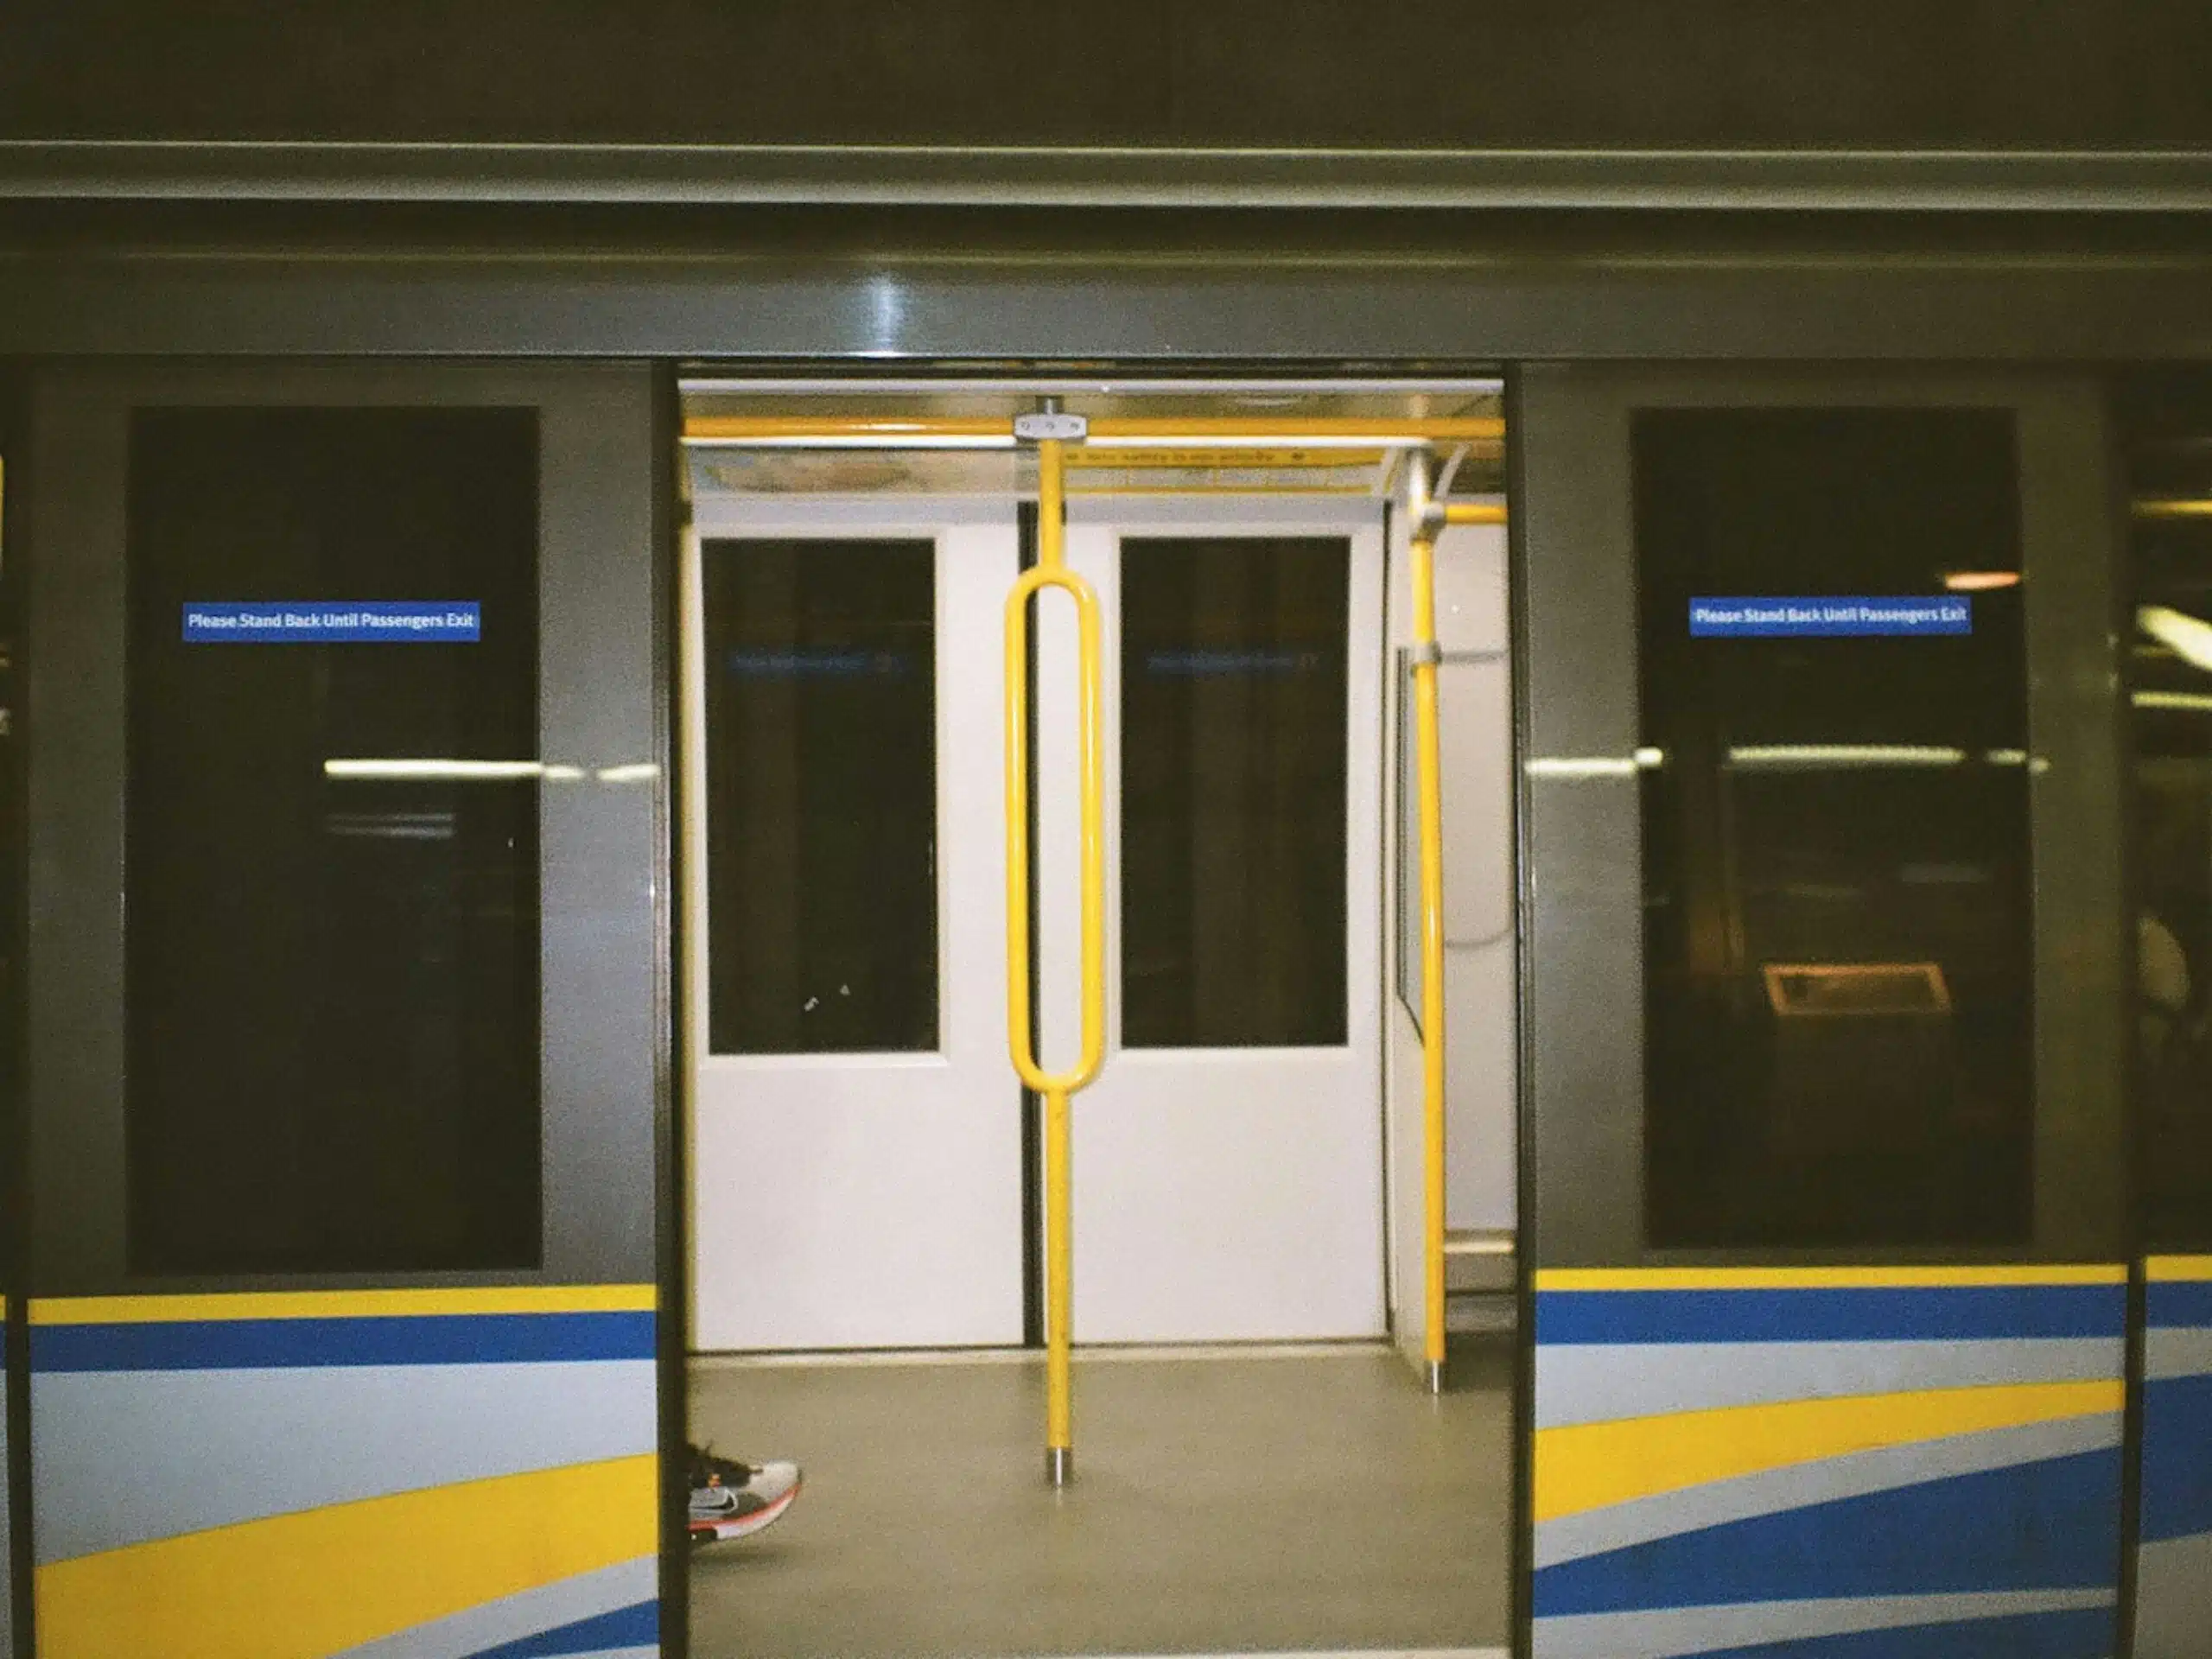 Public Transport - Metro doors open